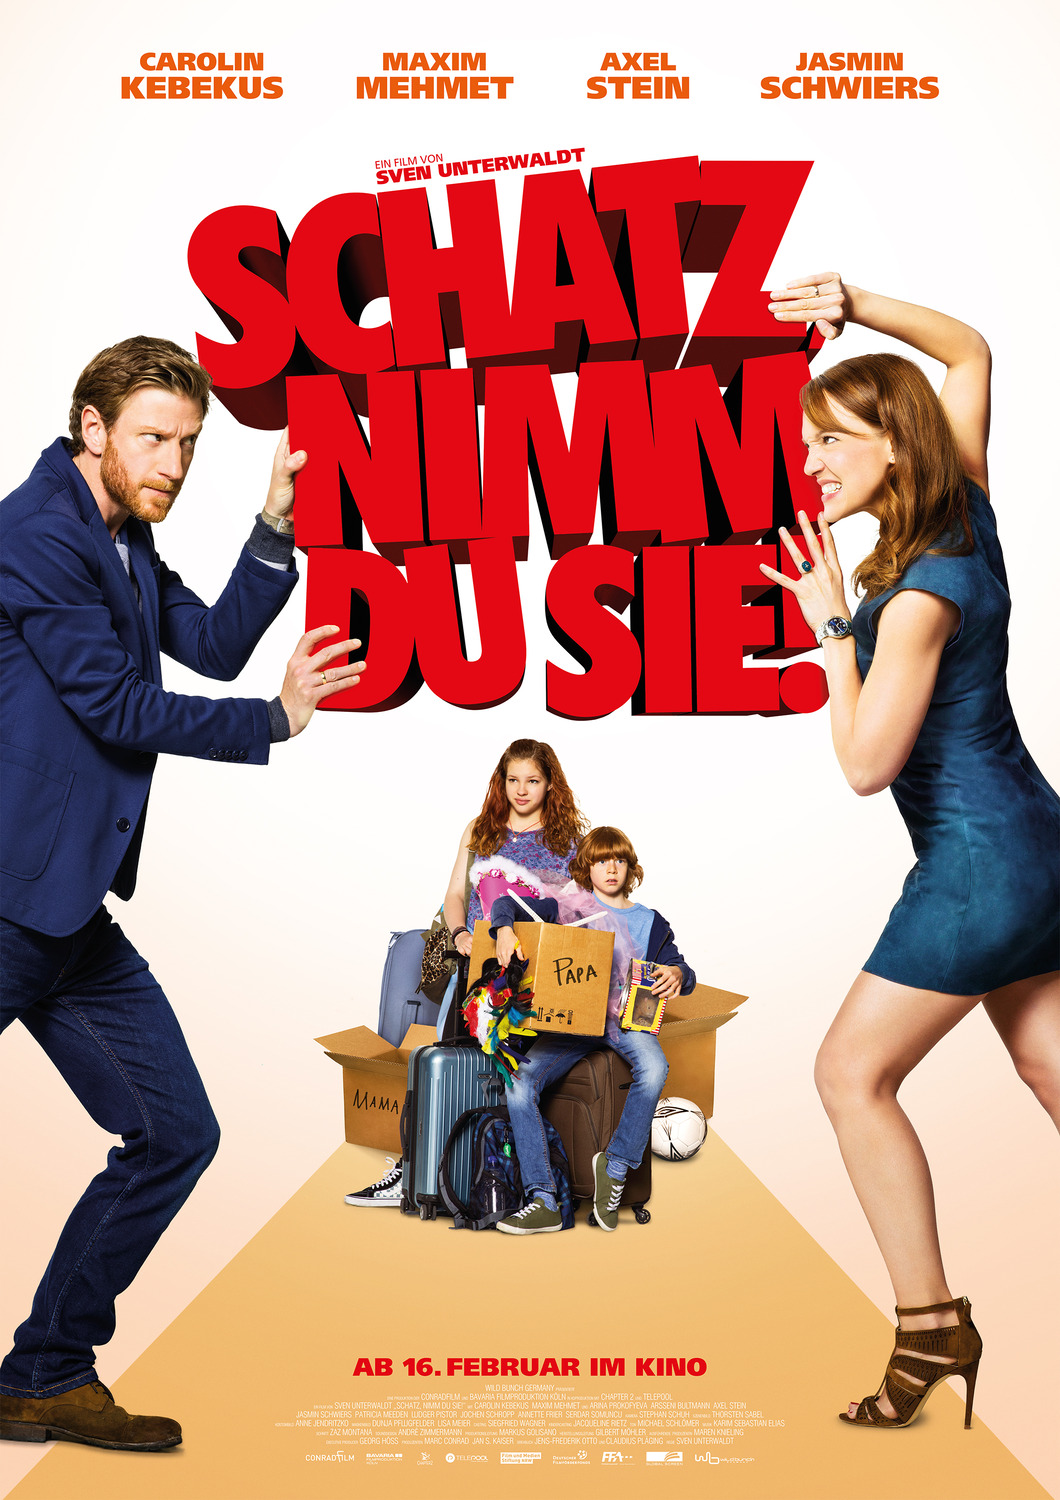 Extra Large Movie Poster Image for Schatz, nimm Du sie! 